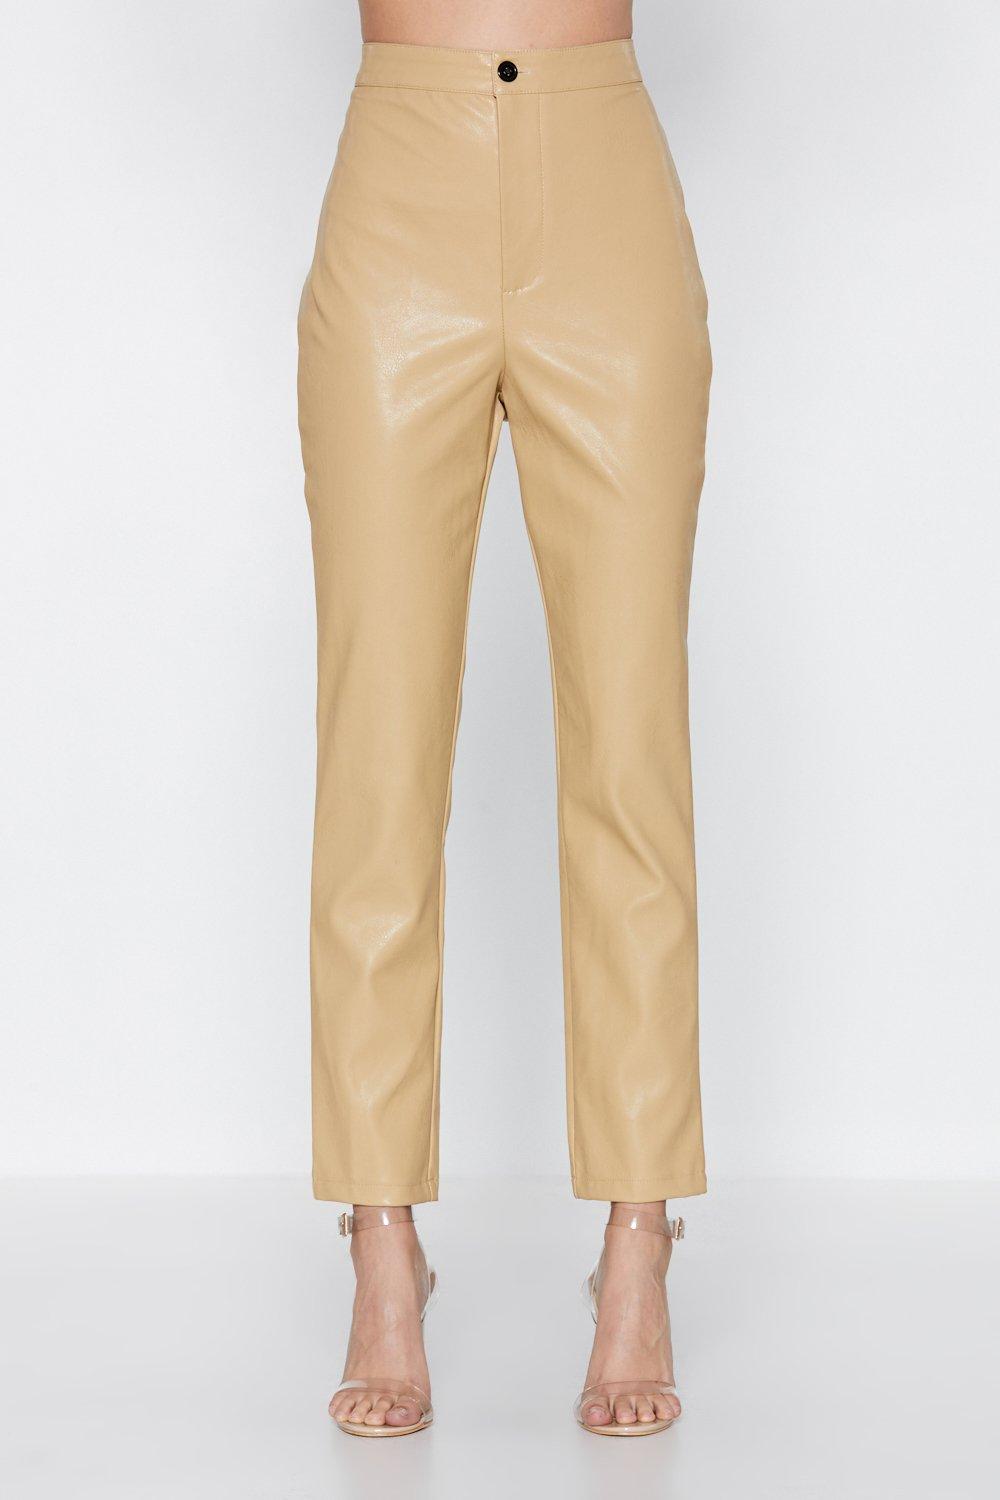 beige faux leather pants